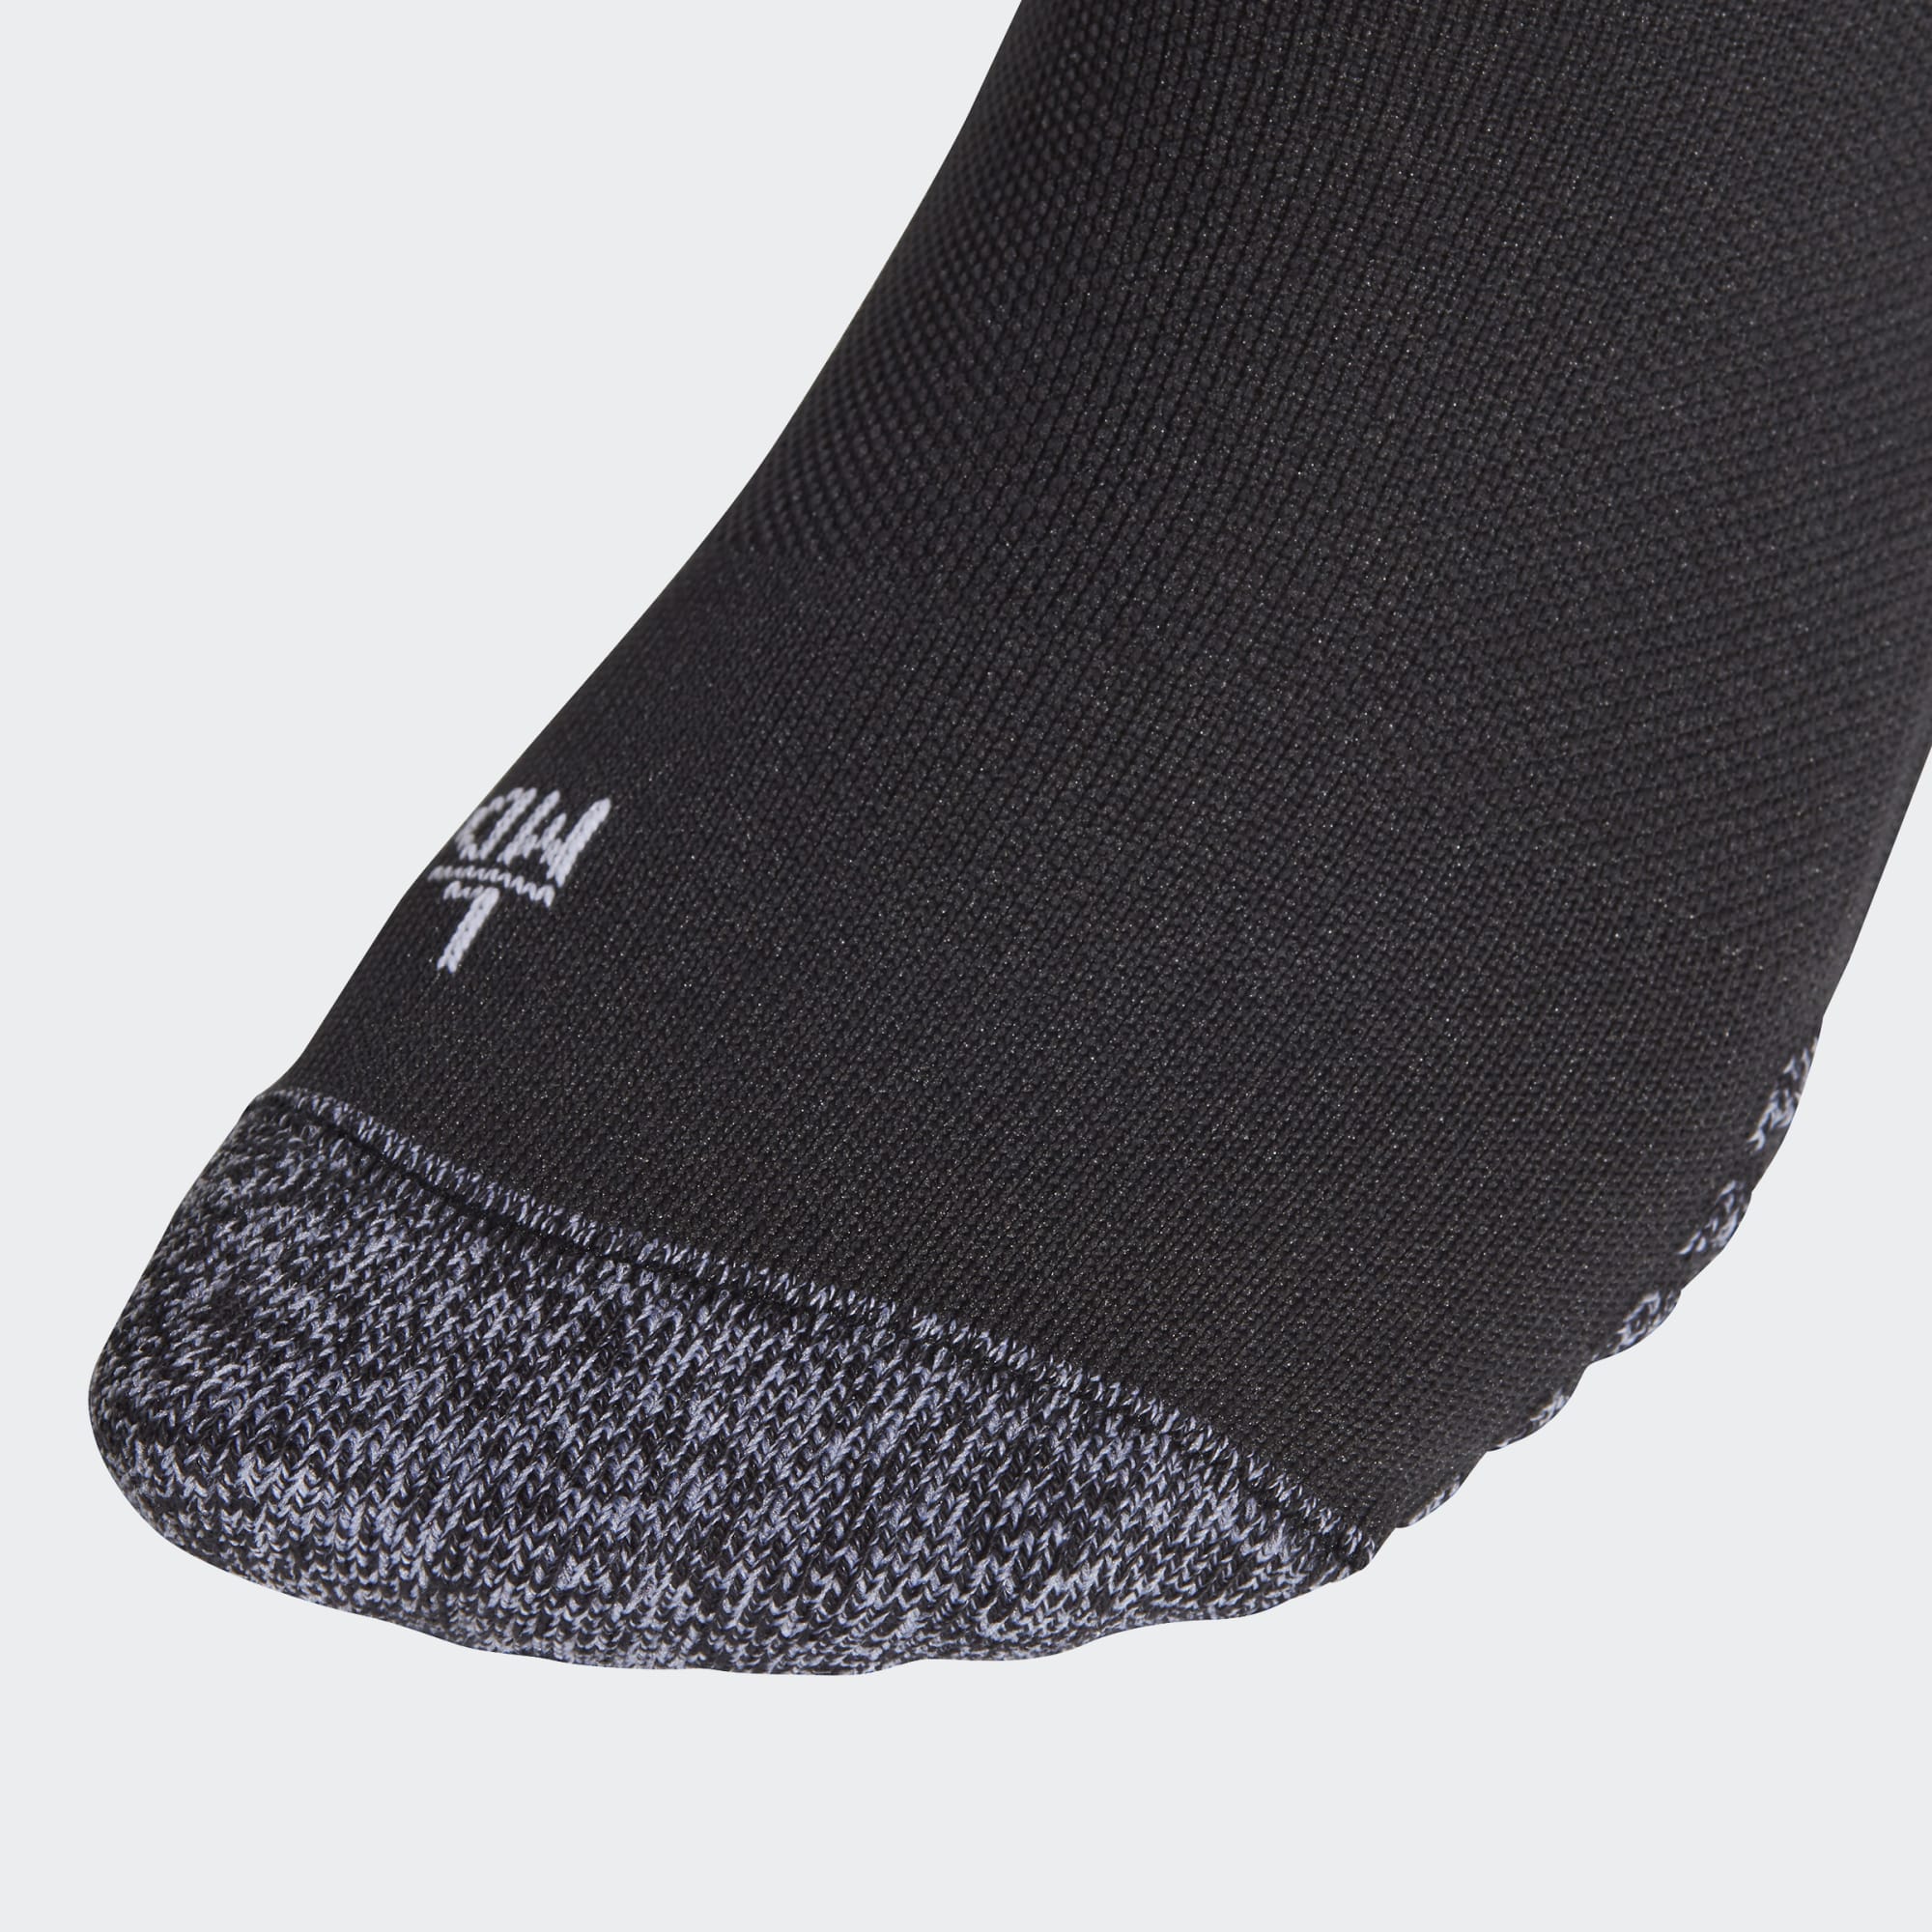 Adi Socks 21 Black / White Gr. 40-42